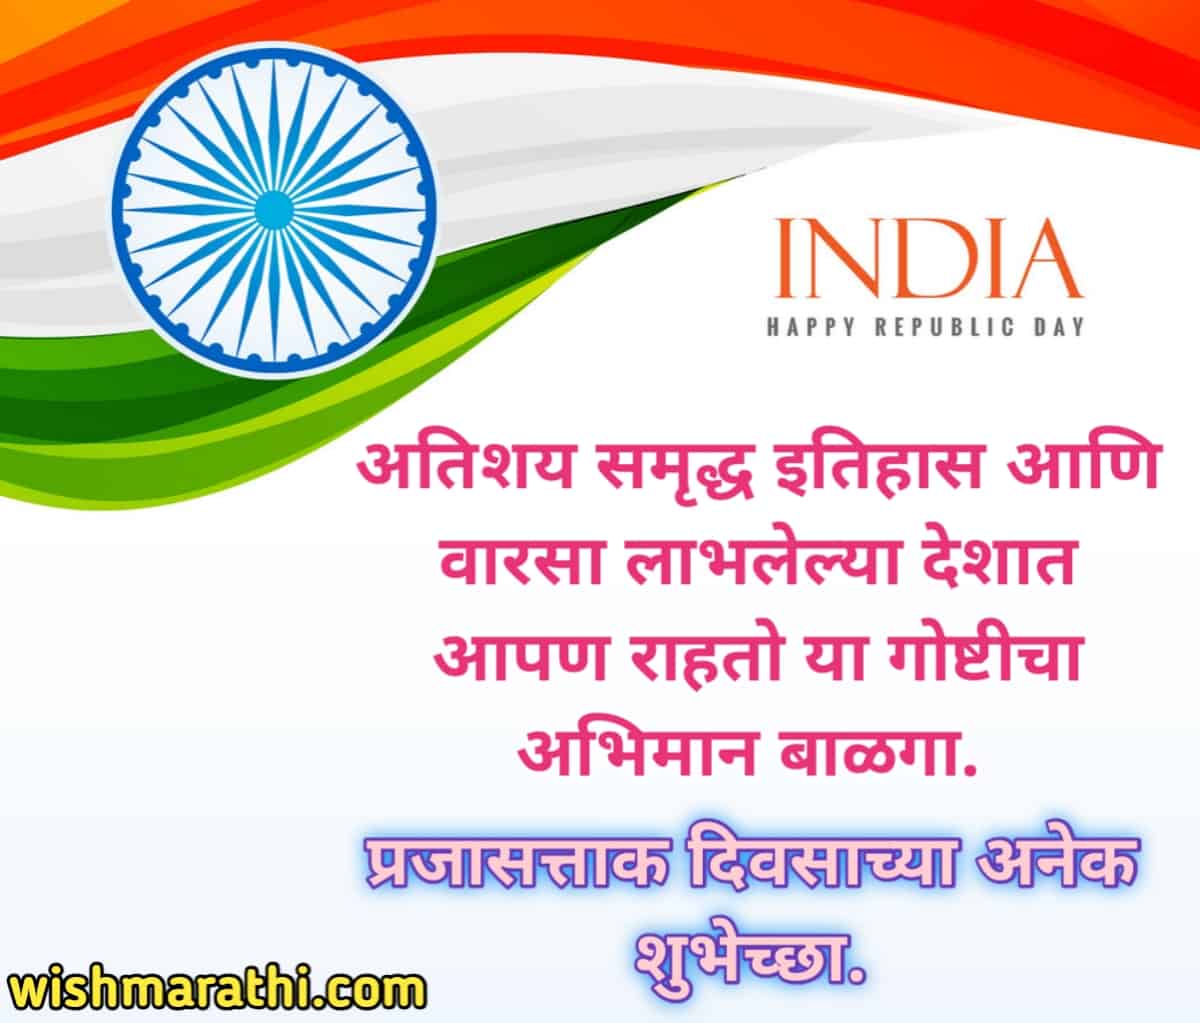 Republic day wishes in marathi